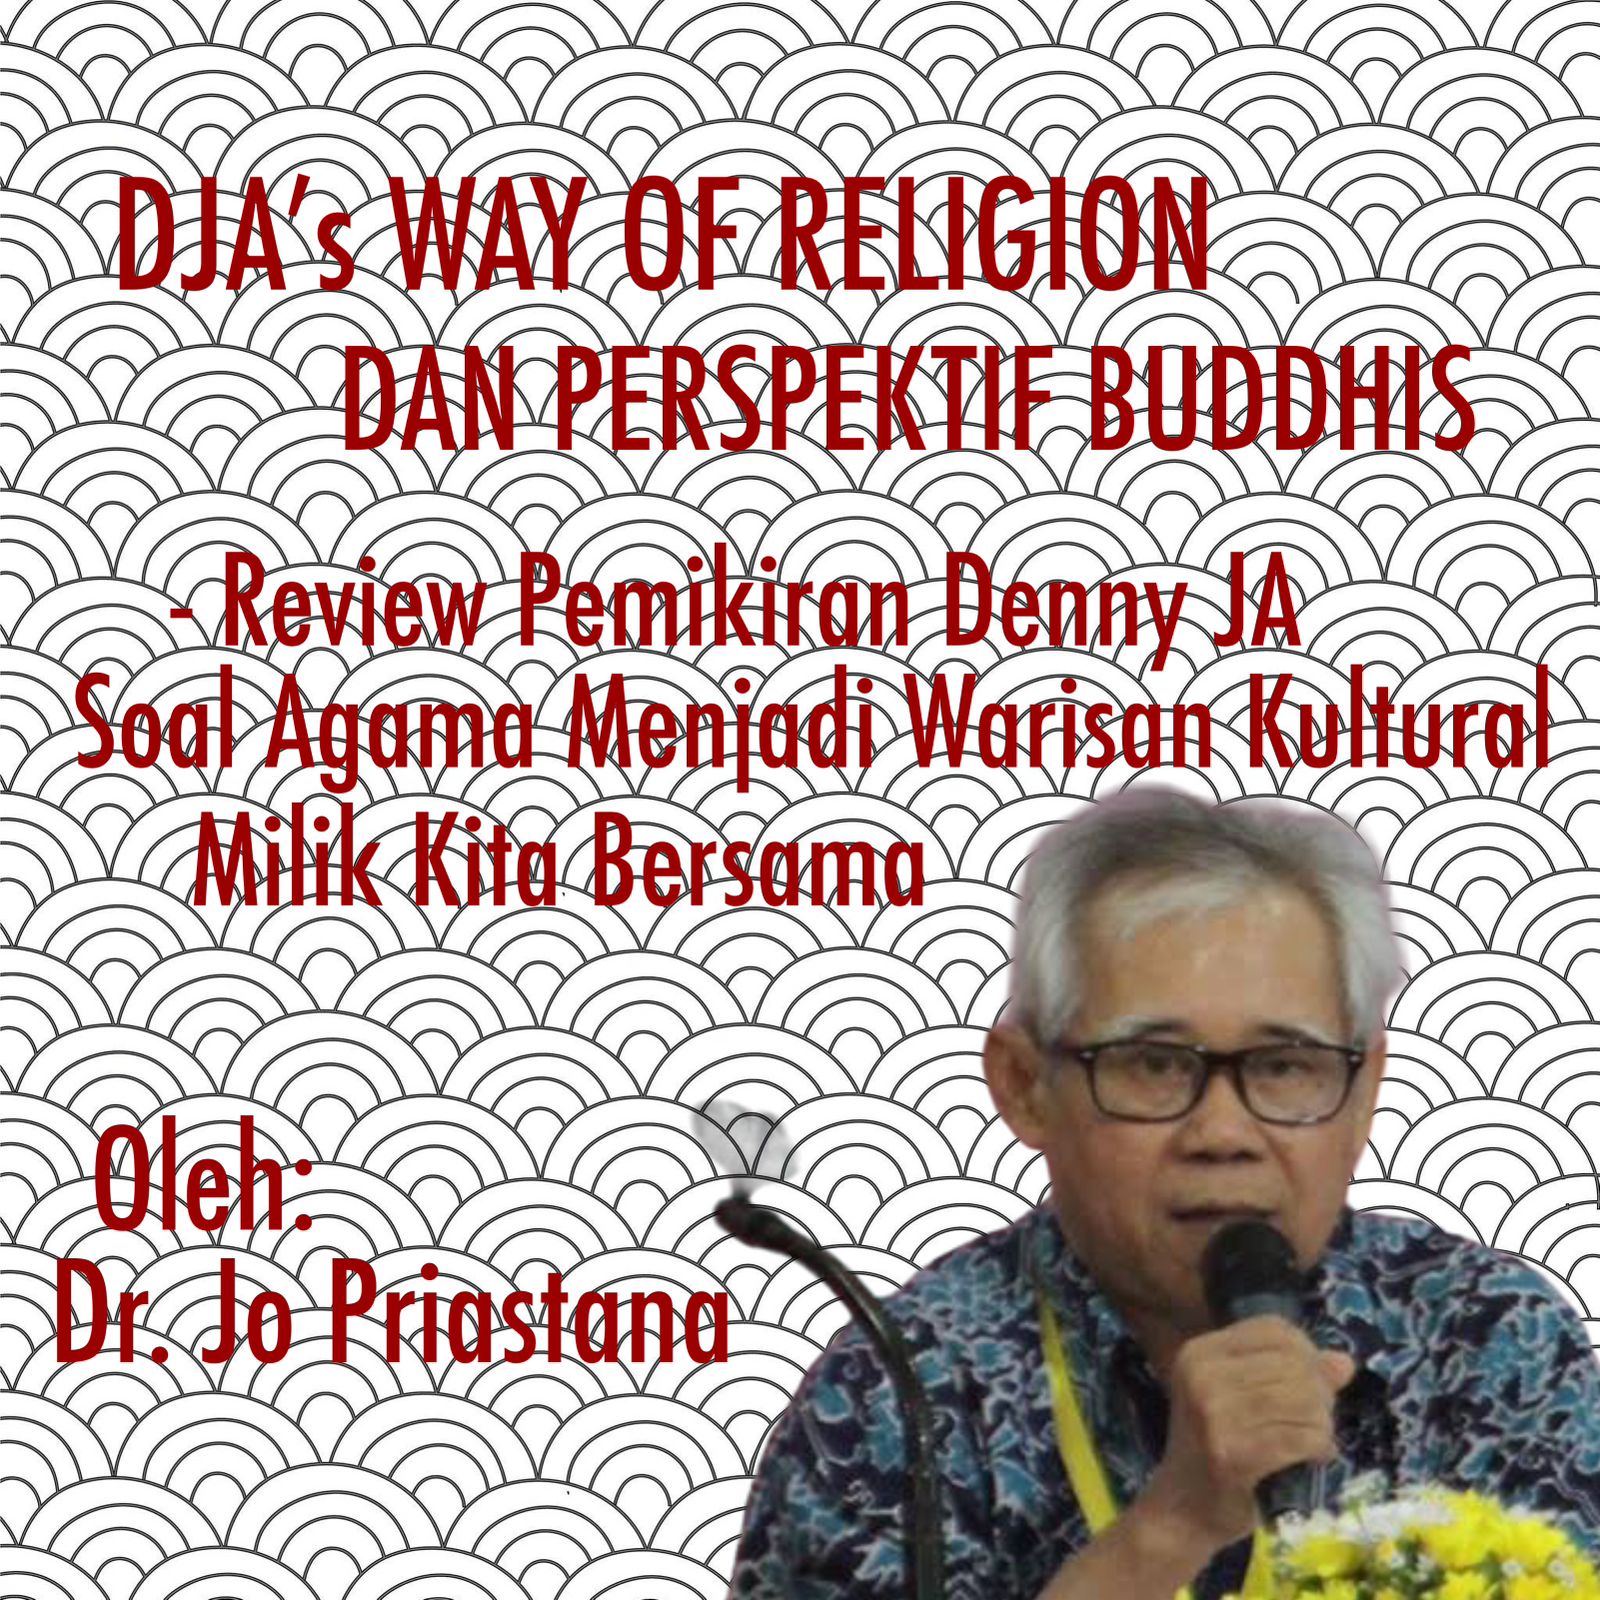 DJA’S WAY OF RELIGION DAN PERSPEKTIF BUDDHIS Review atas Pemikiran Denny JA Soal Agama Menjadi Warisan Kultural Milik Bersama”